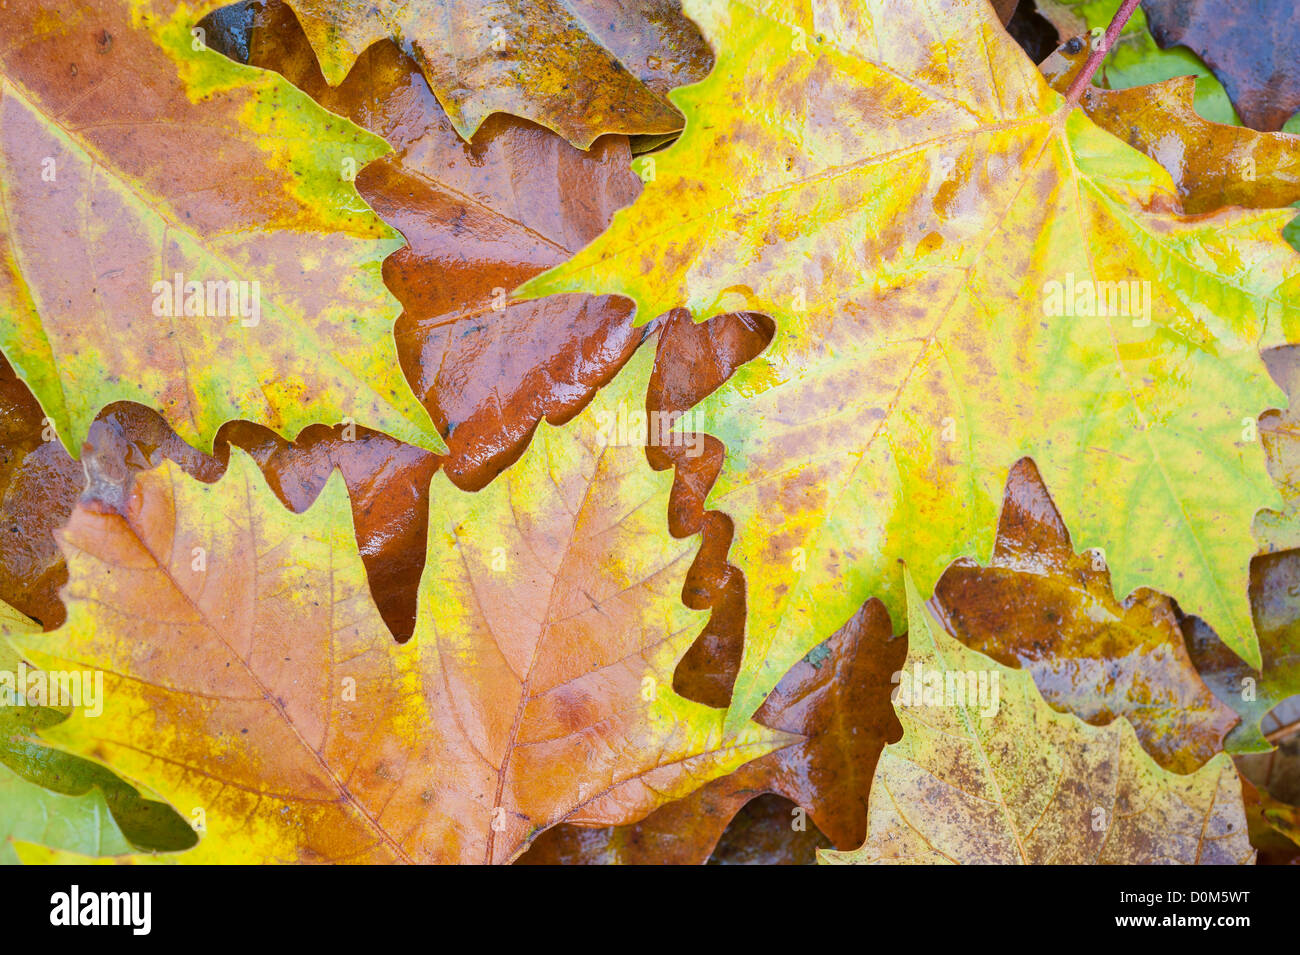 Plano de Londres Platanus × acerifolia, hojas caídas de colores otoñales, Inglaterra, Noviembre Foto de stock